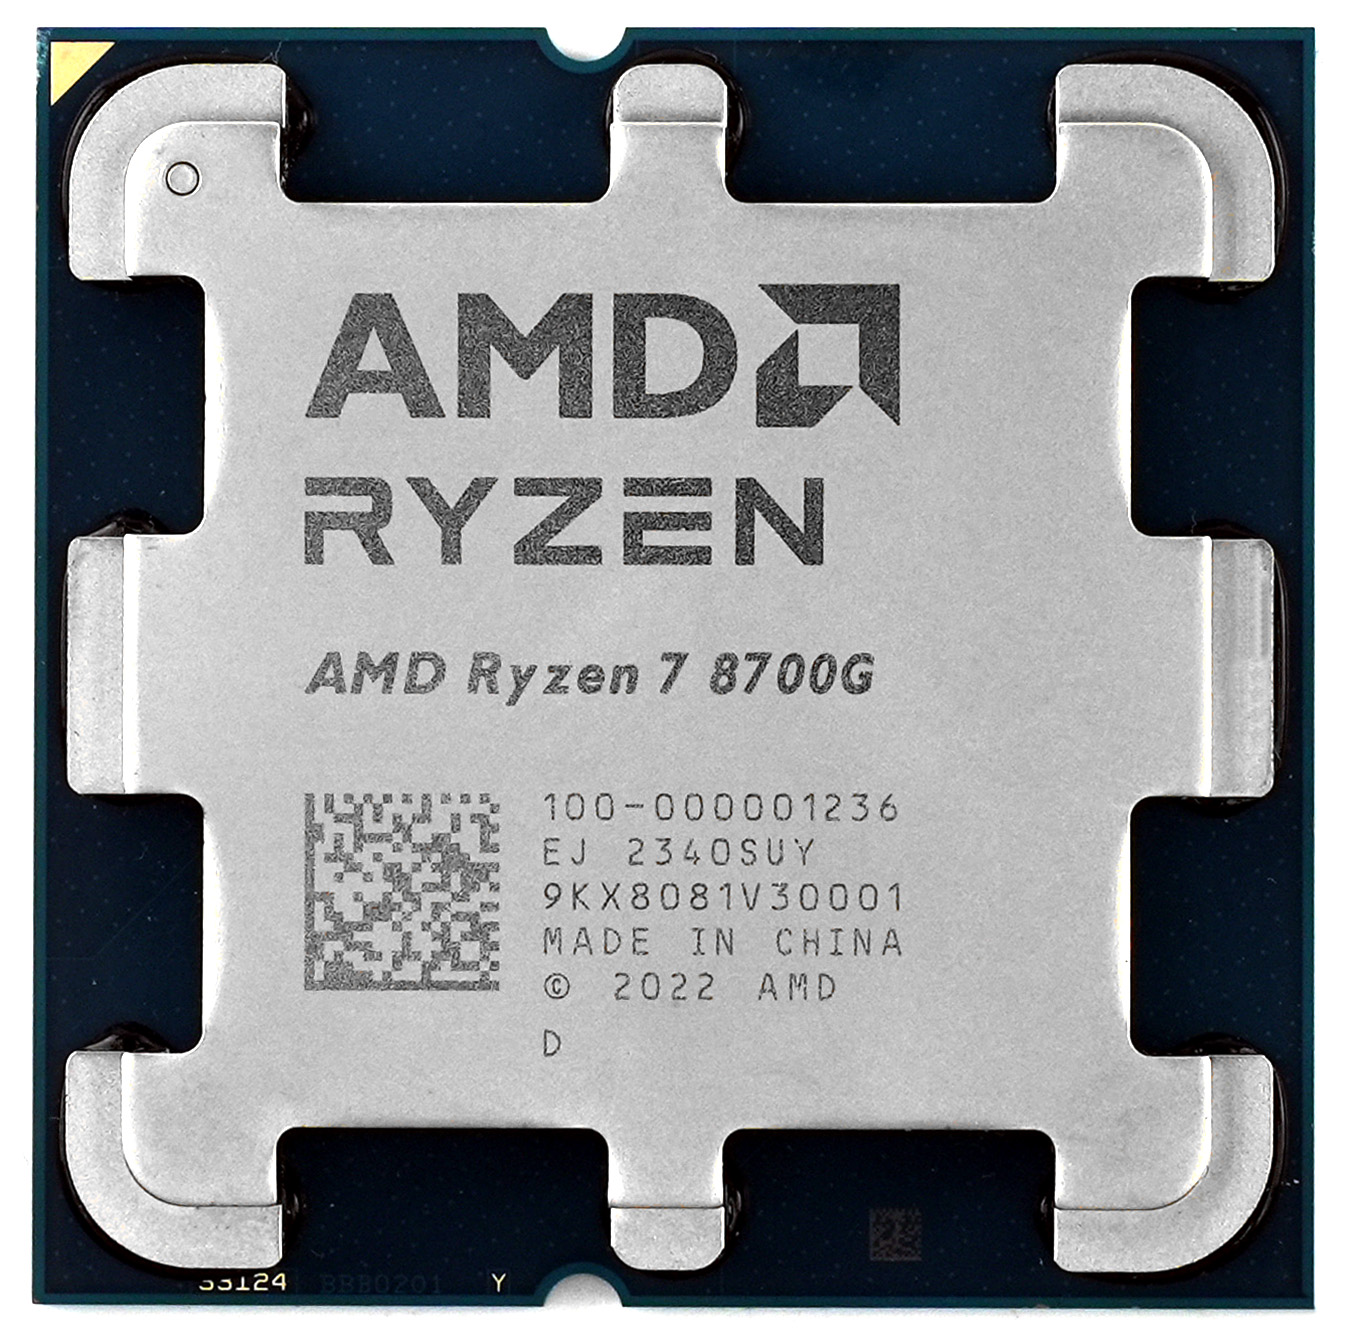 AMD Ryzen 8000G